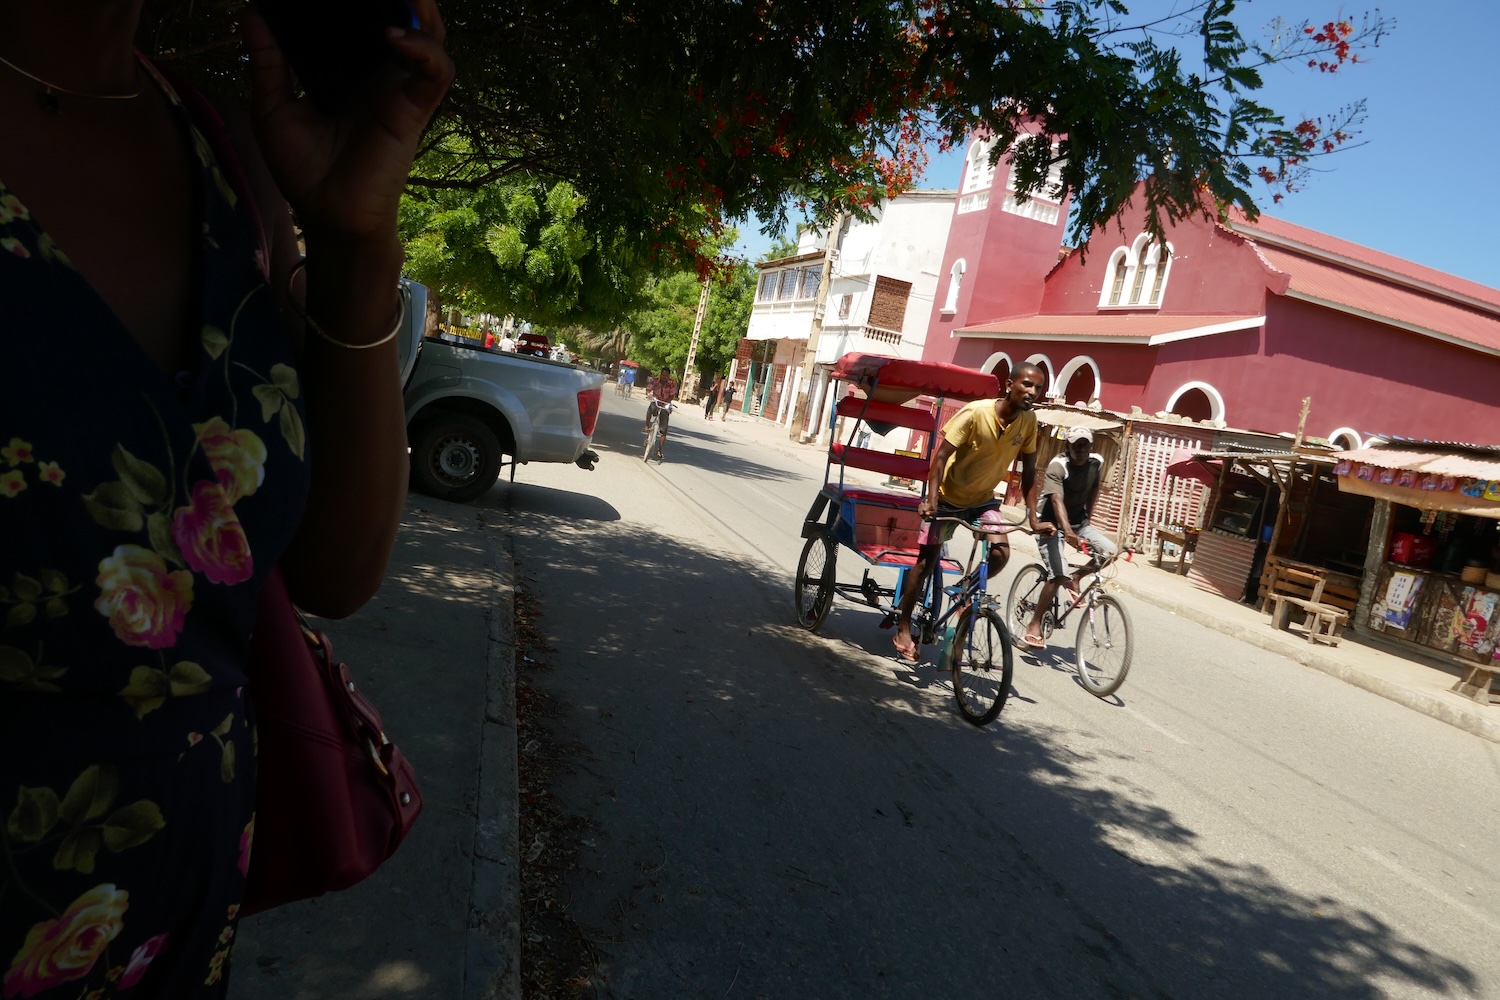 La rue où se situe l’organisation Bel Avenir et où passent des cyclo-bus, le moyen de transport dans la ville de Tuléar © Globe Reporters